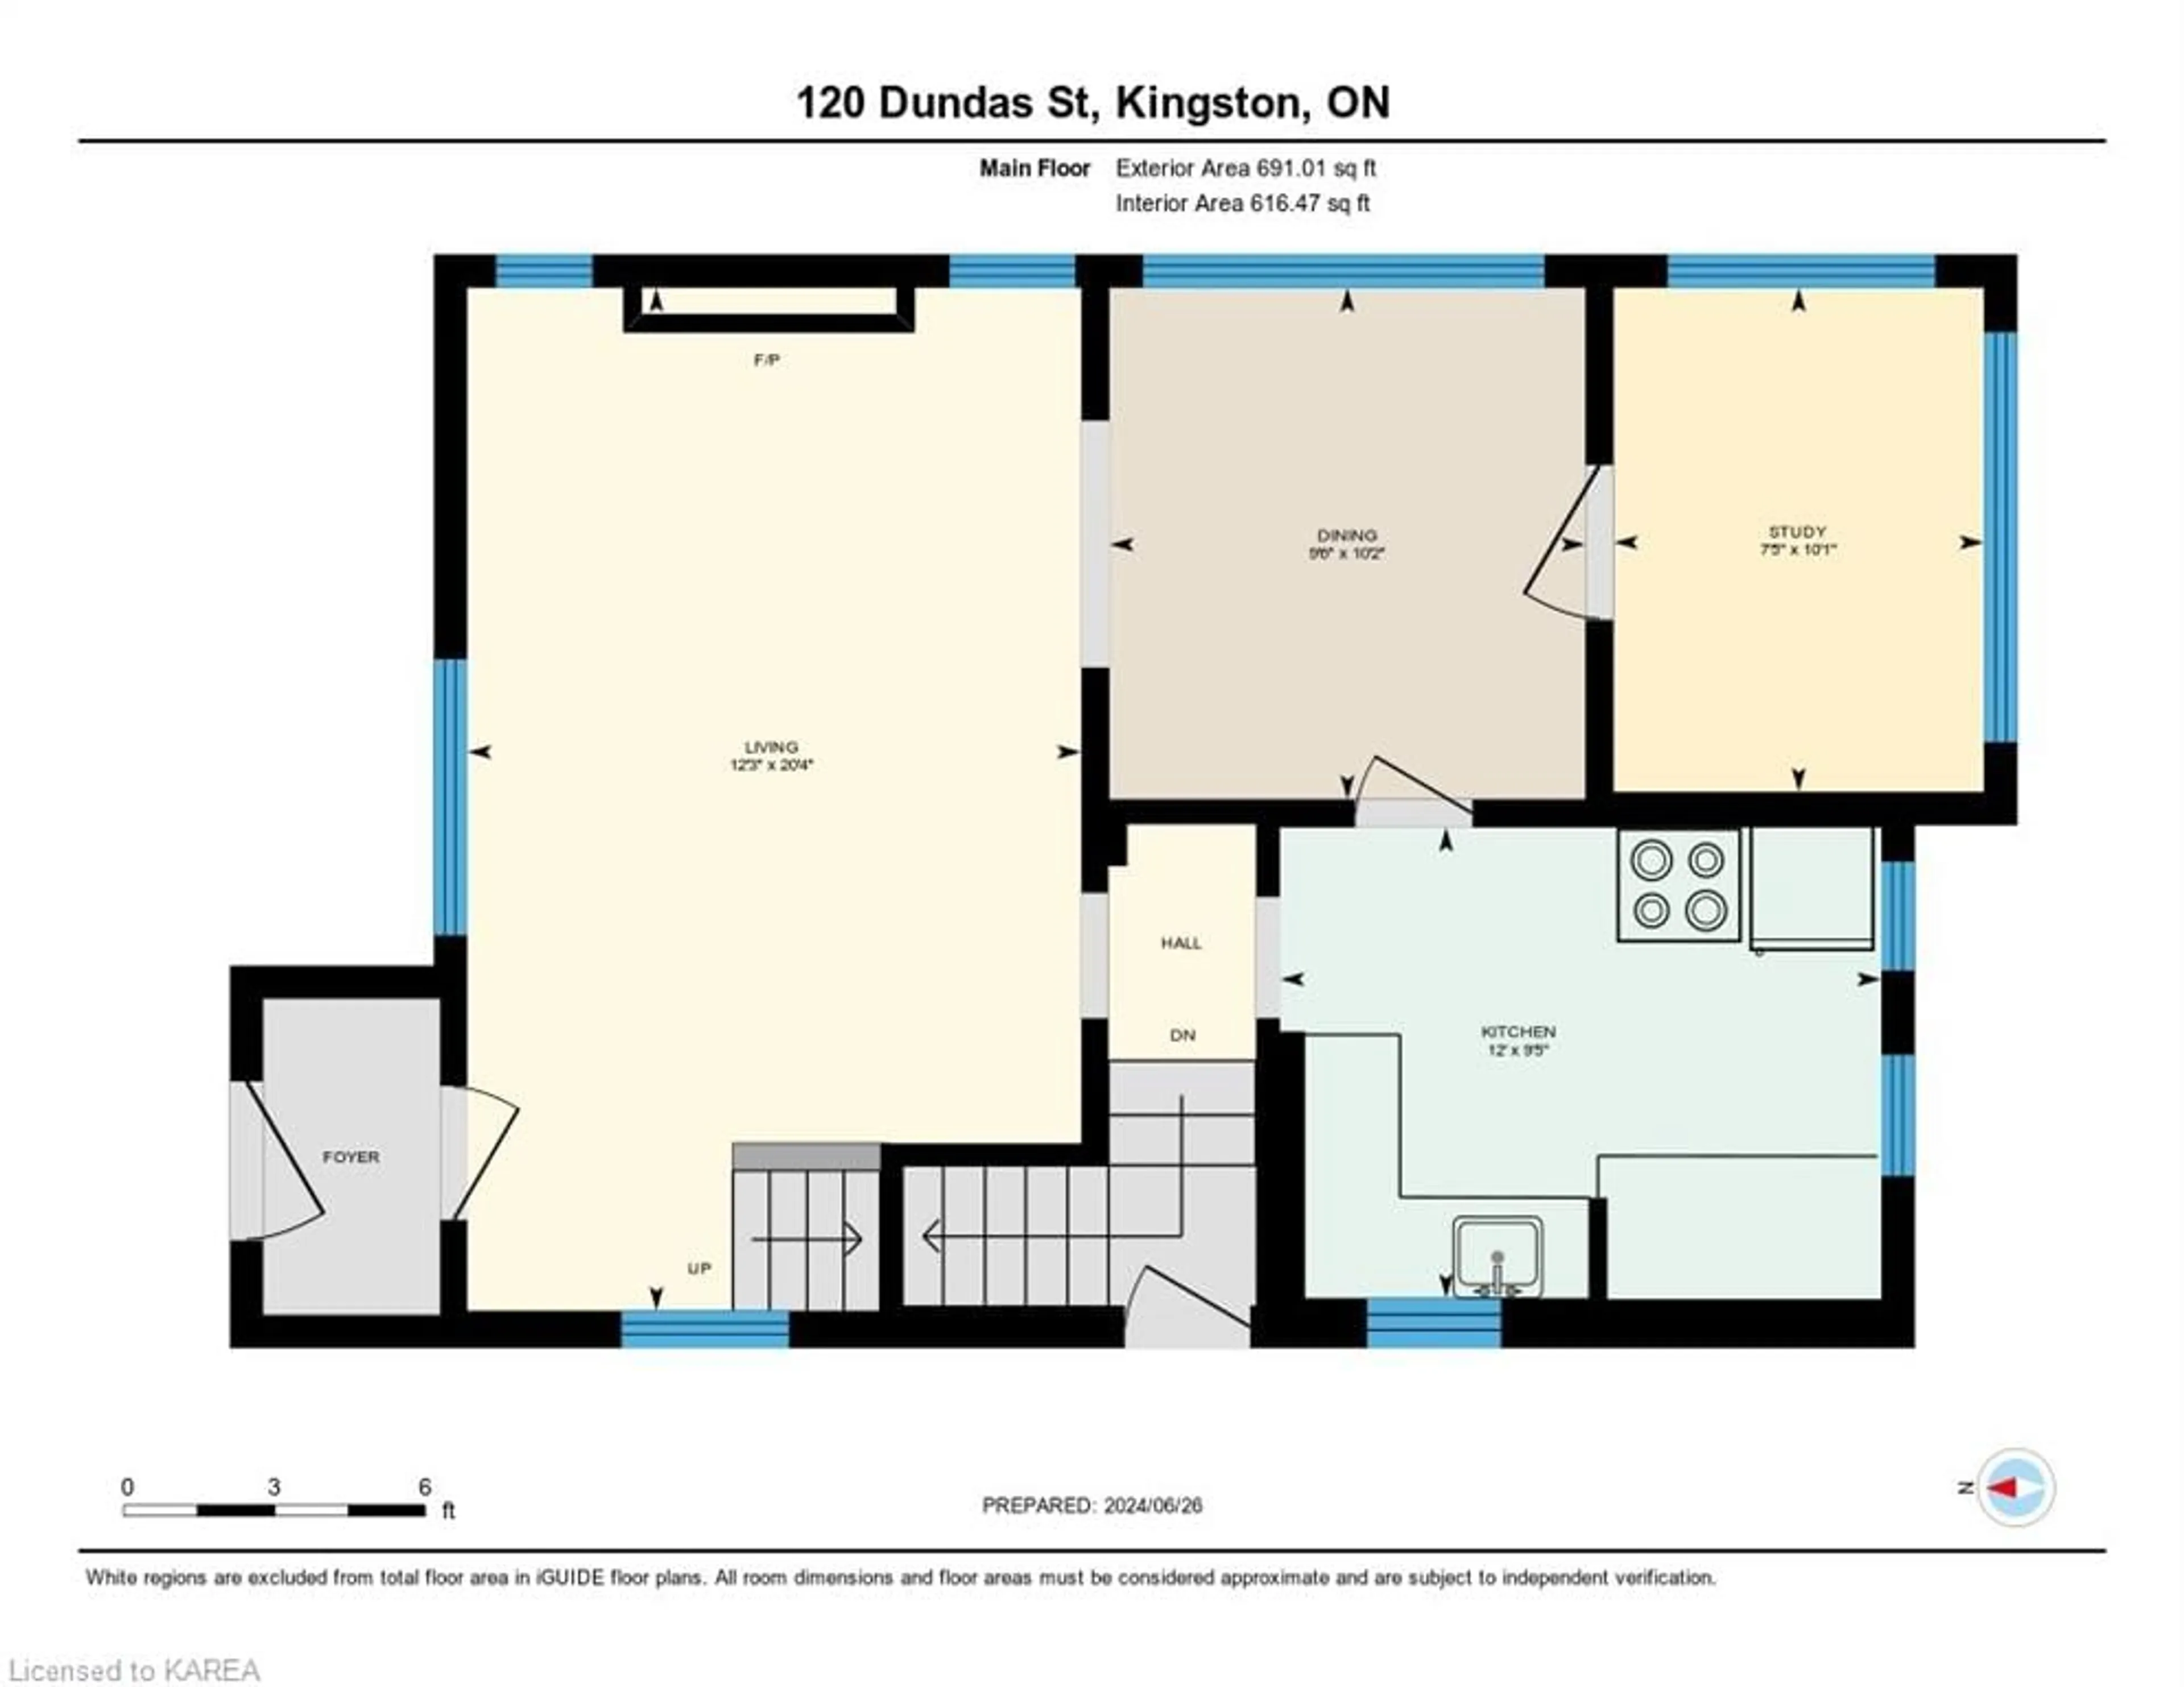 Floor plan for 120 Dundas St, Kingston Ontario K7L 1N6